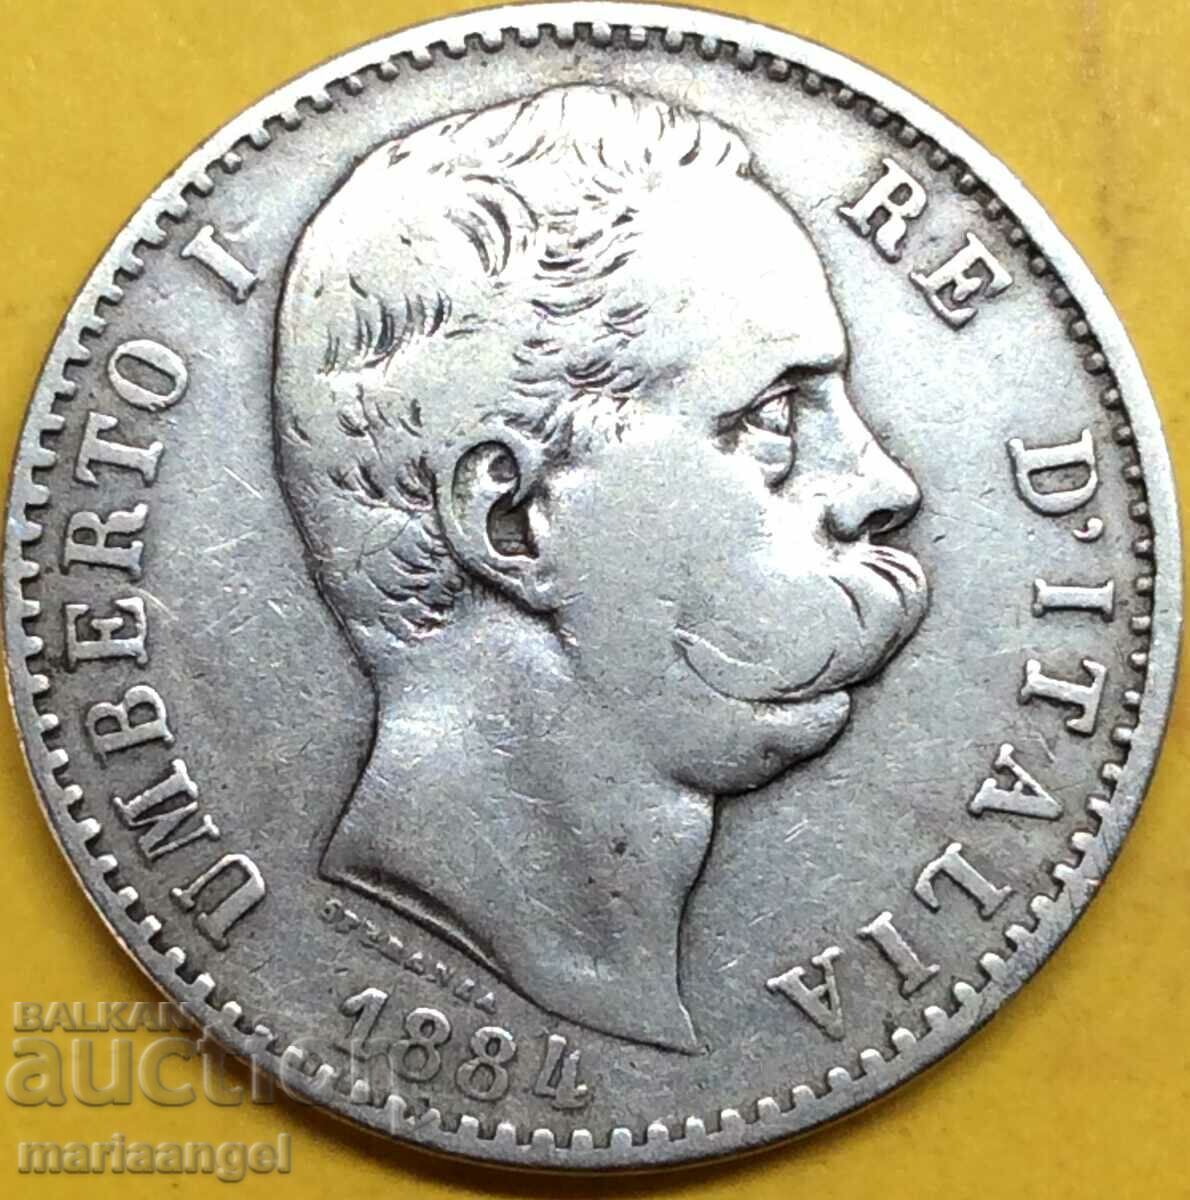 2 λιρέτες 1884 Ιταλία Umberto I Silver